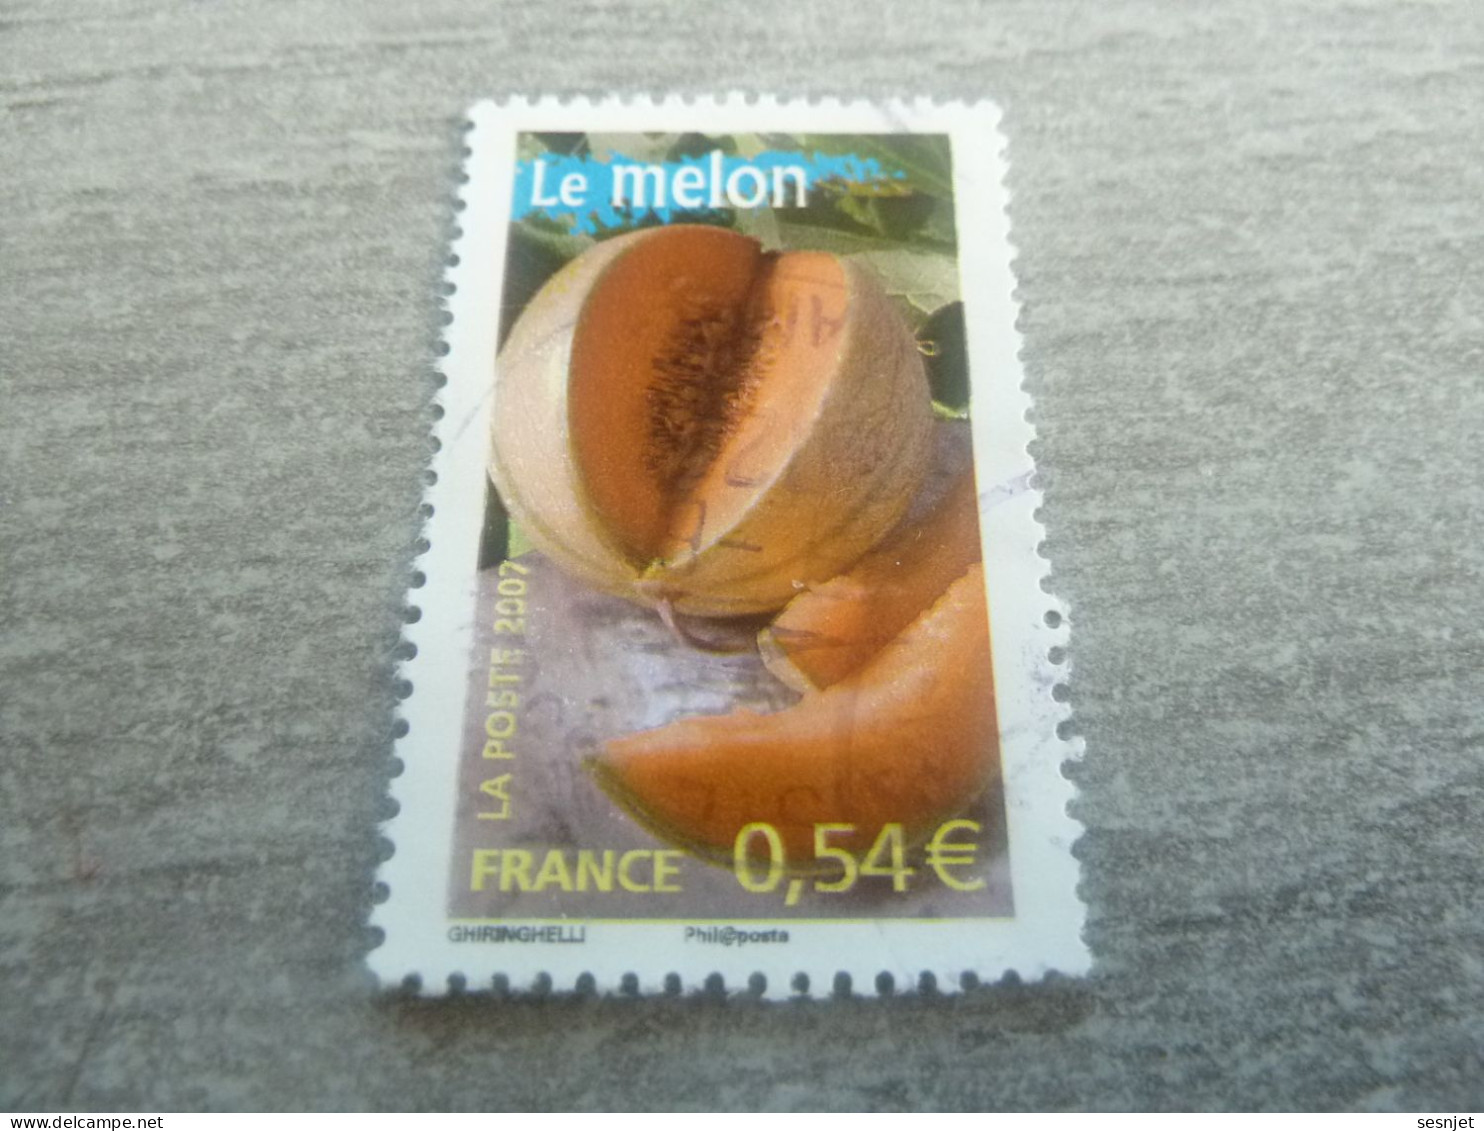 Le Melon - Portraits De Régions - France à Vivre - 0.54 € - Yt 4103 - Multicolore - Oblitéré - Année 2007 - - Food